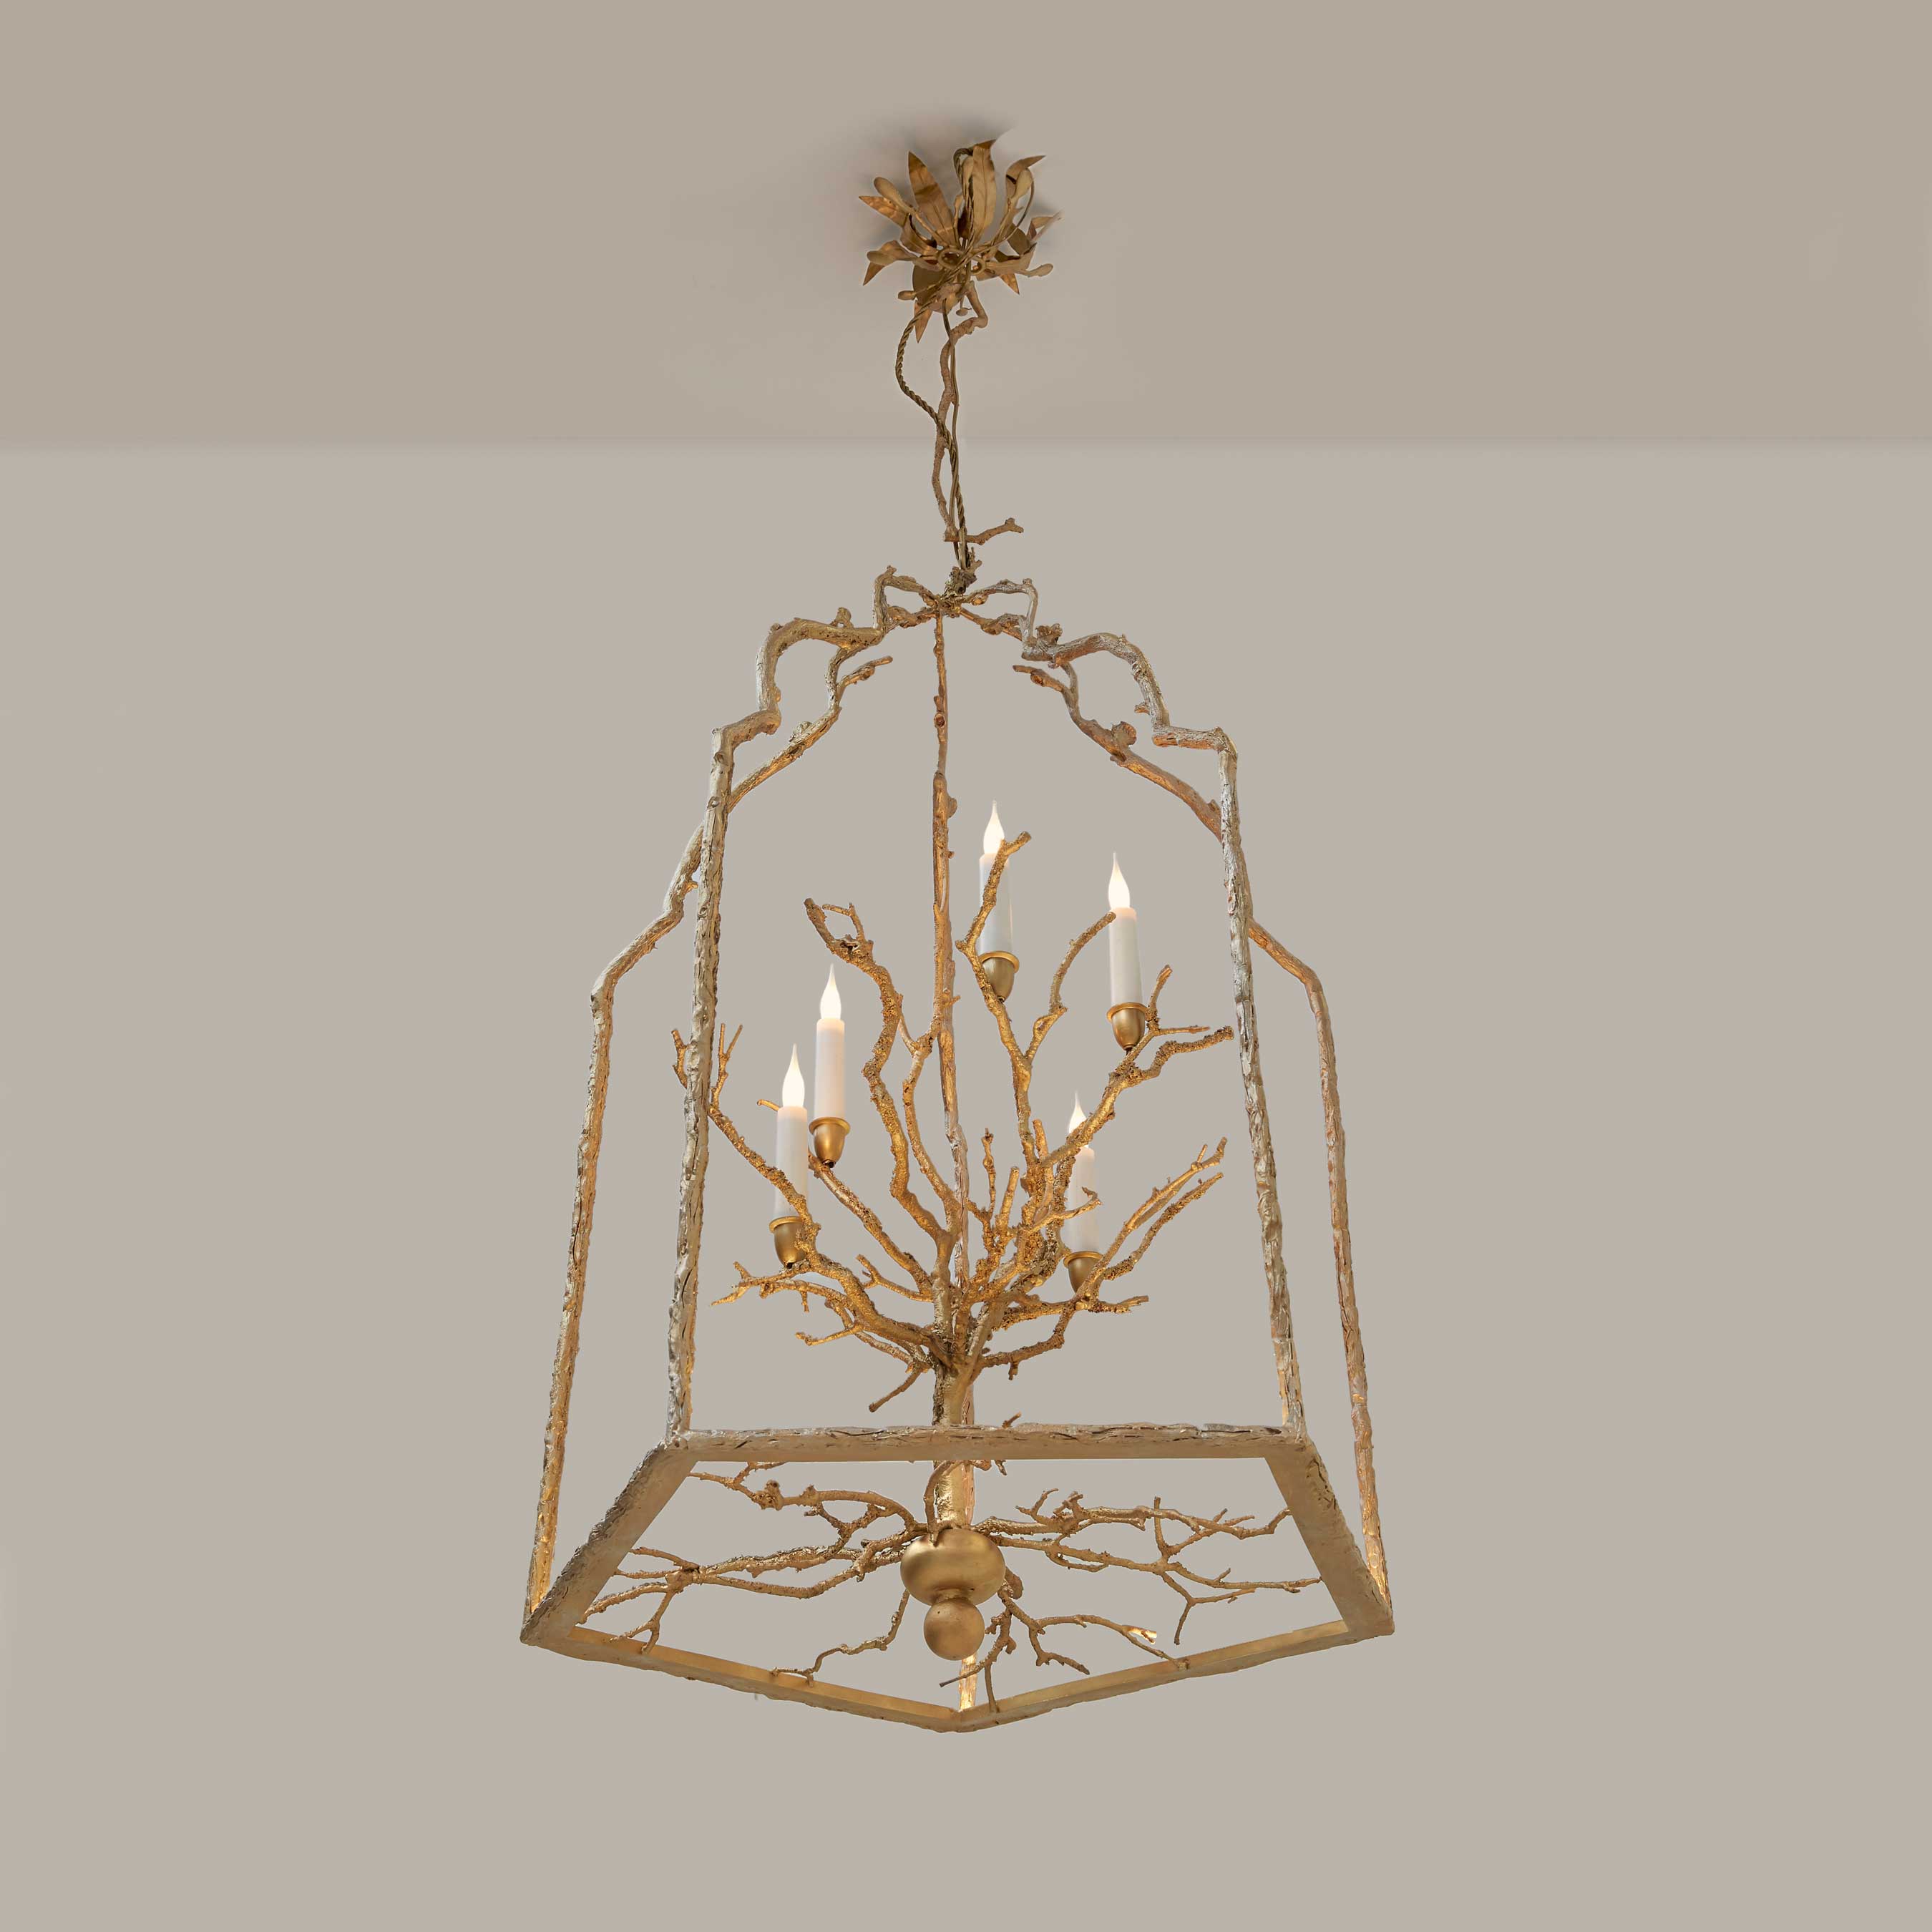 «L’arbre doré» lantern